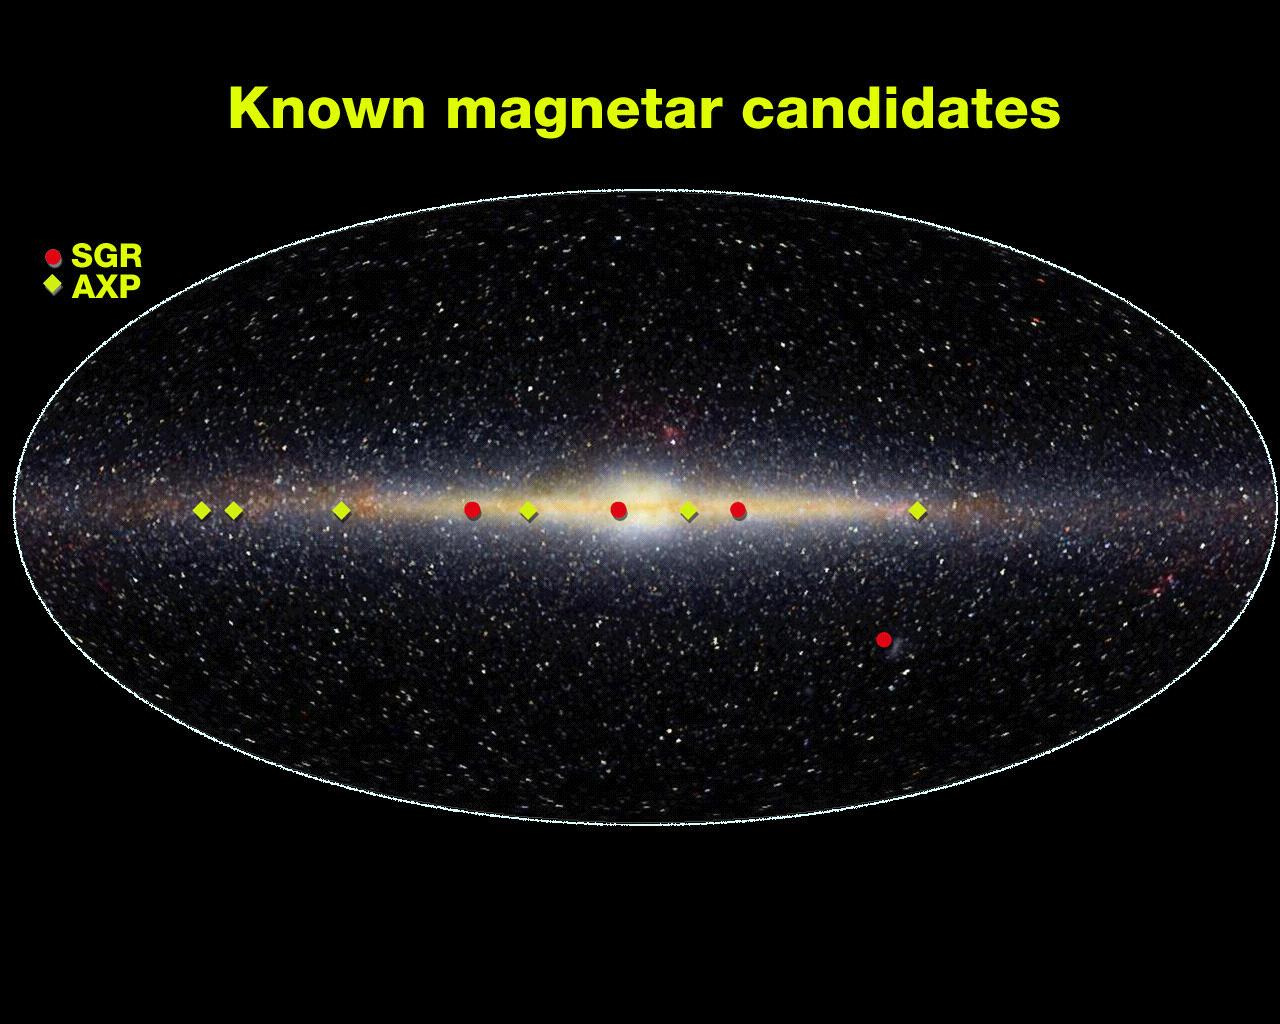 er observert i Melkeveiens plan. Kilder: 1) Hvor kommer magnetarstrålingen fra?